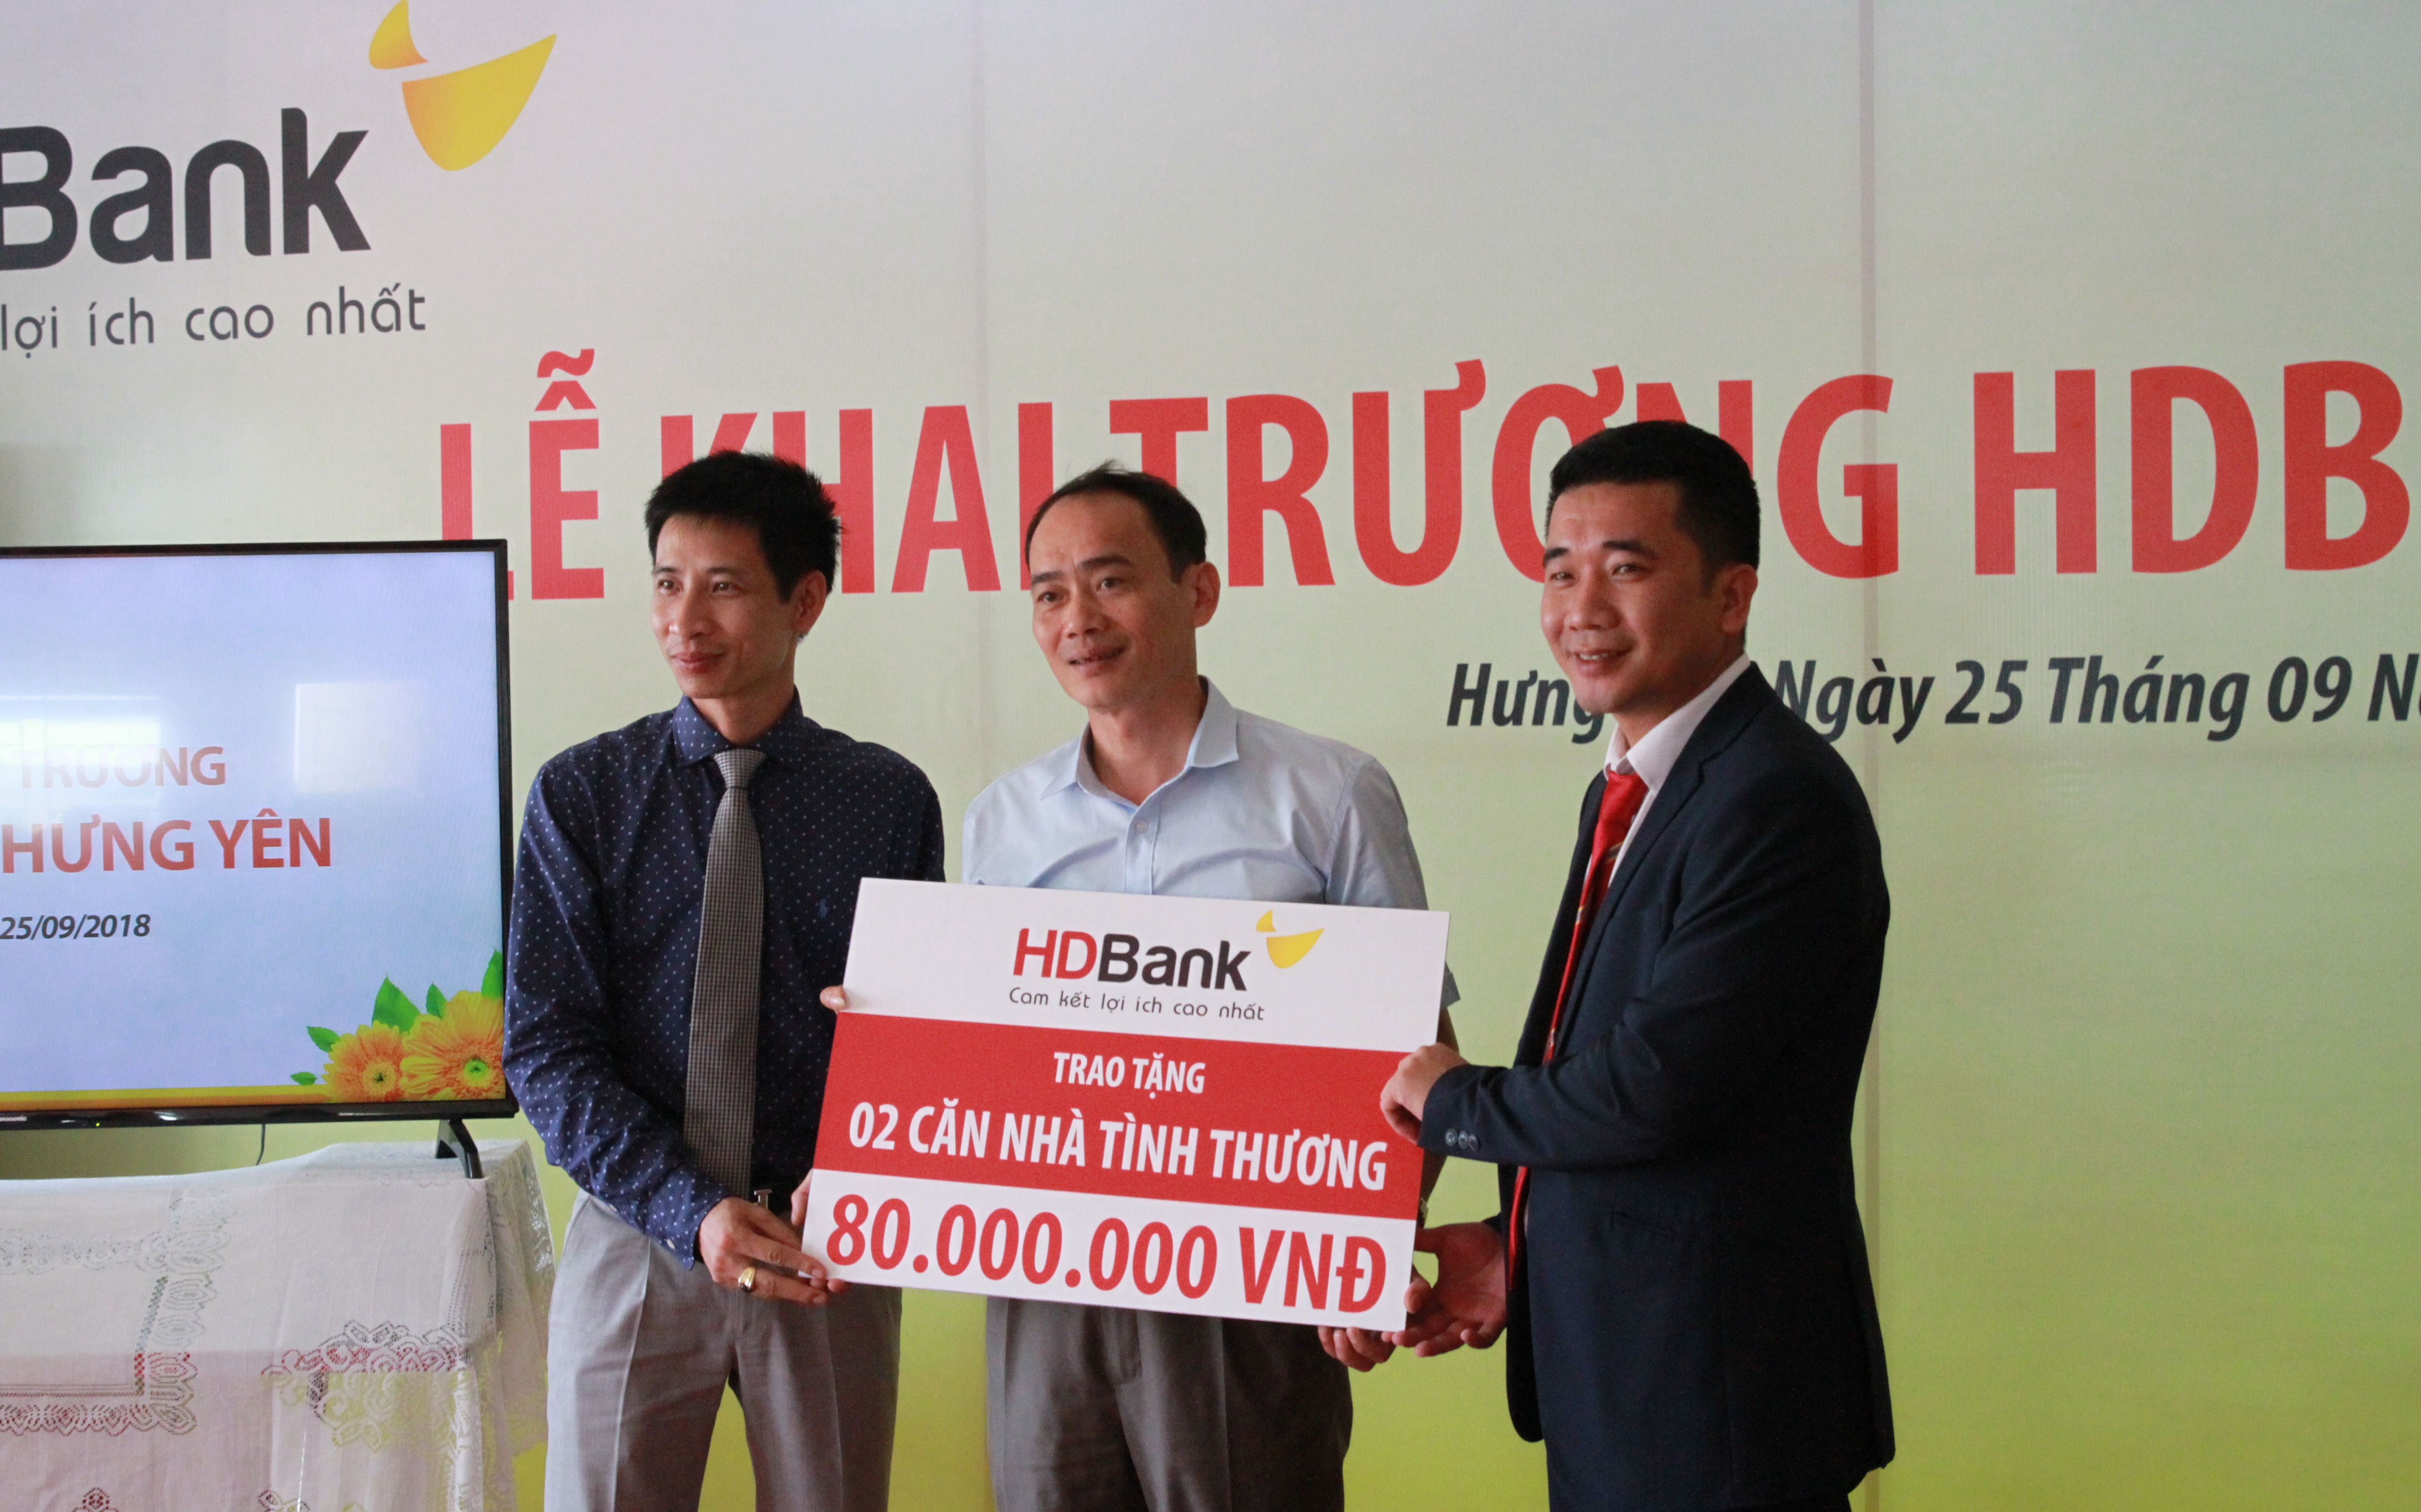 Nhân dịp khai trương, HDBank Hưng Yên trao tặng 2 căn nhà tình thương cho hộ gia đình khó khăn tại địa phương